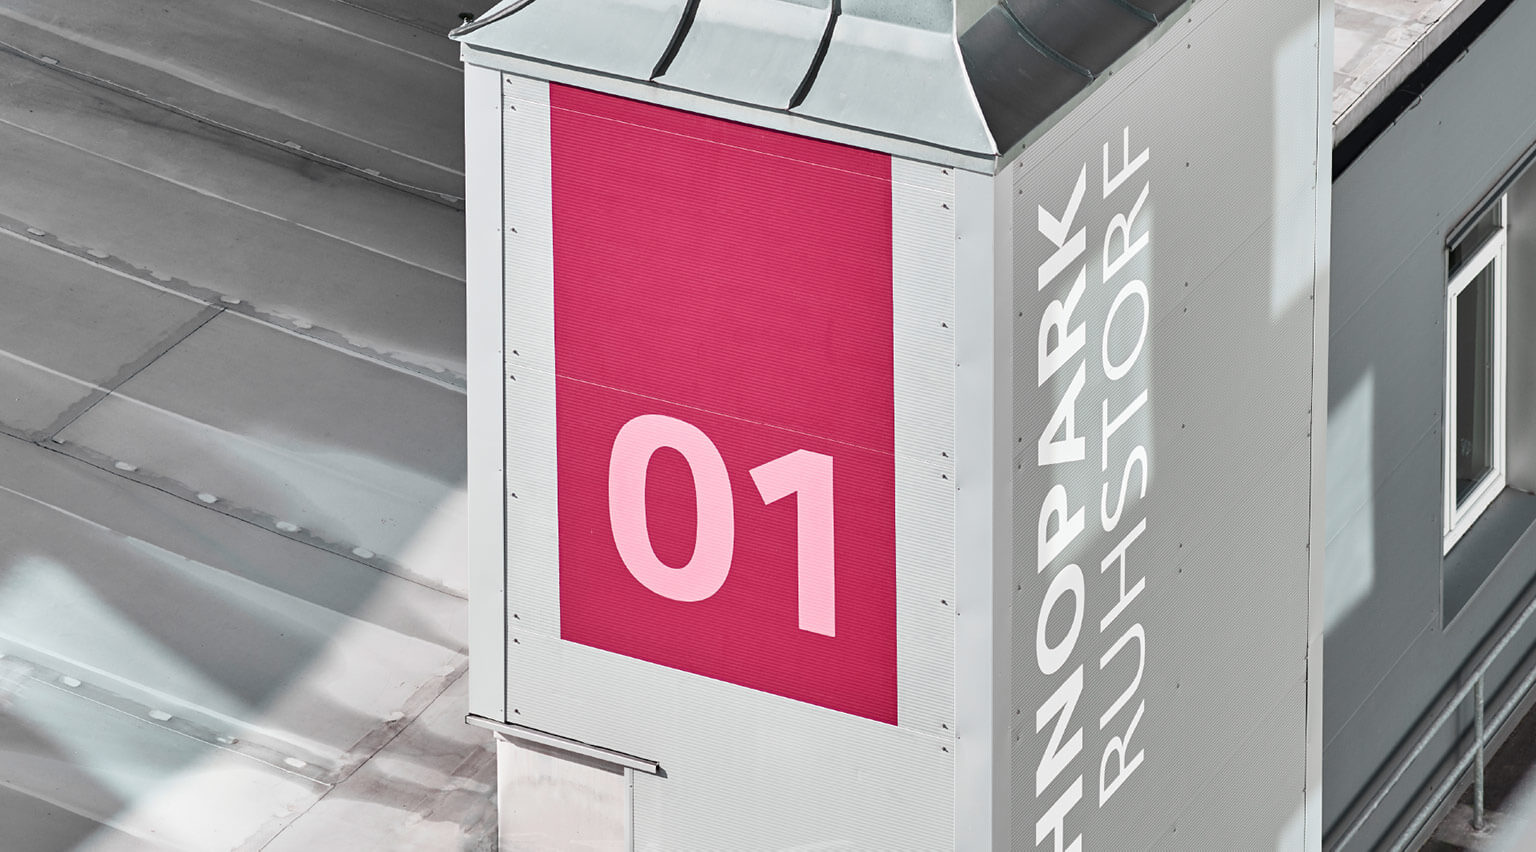 Turm mit dem Gebäudebranding Technopark Ruhstorf 01 auf pink